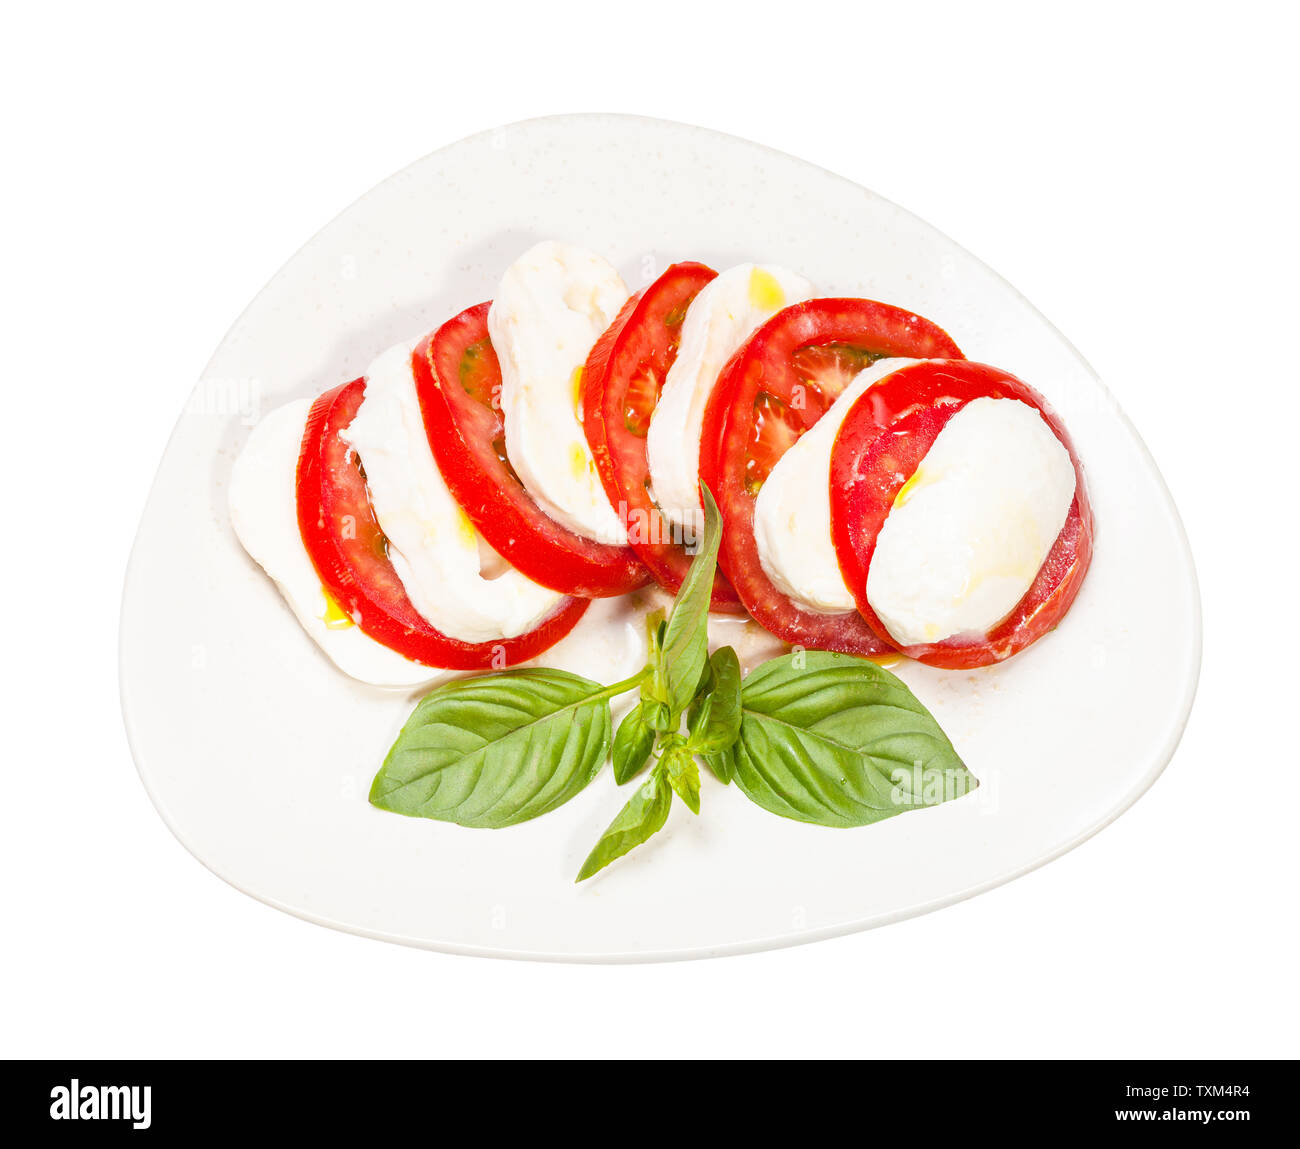 Italienische Küche Insalata Caprese (Caprese) - Blick von oben auf die in Scheiben geschnittenen Mozzarella und Tomaten mit Basilikum Zweig auf der Platte isoliert auf weißem backgrou Stockfoto